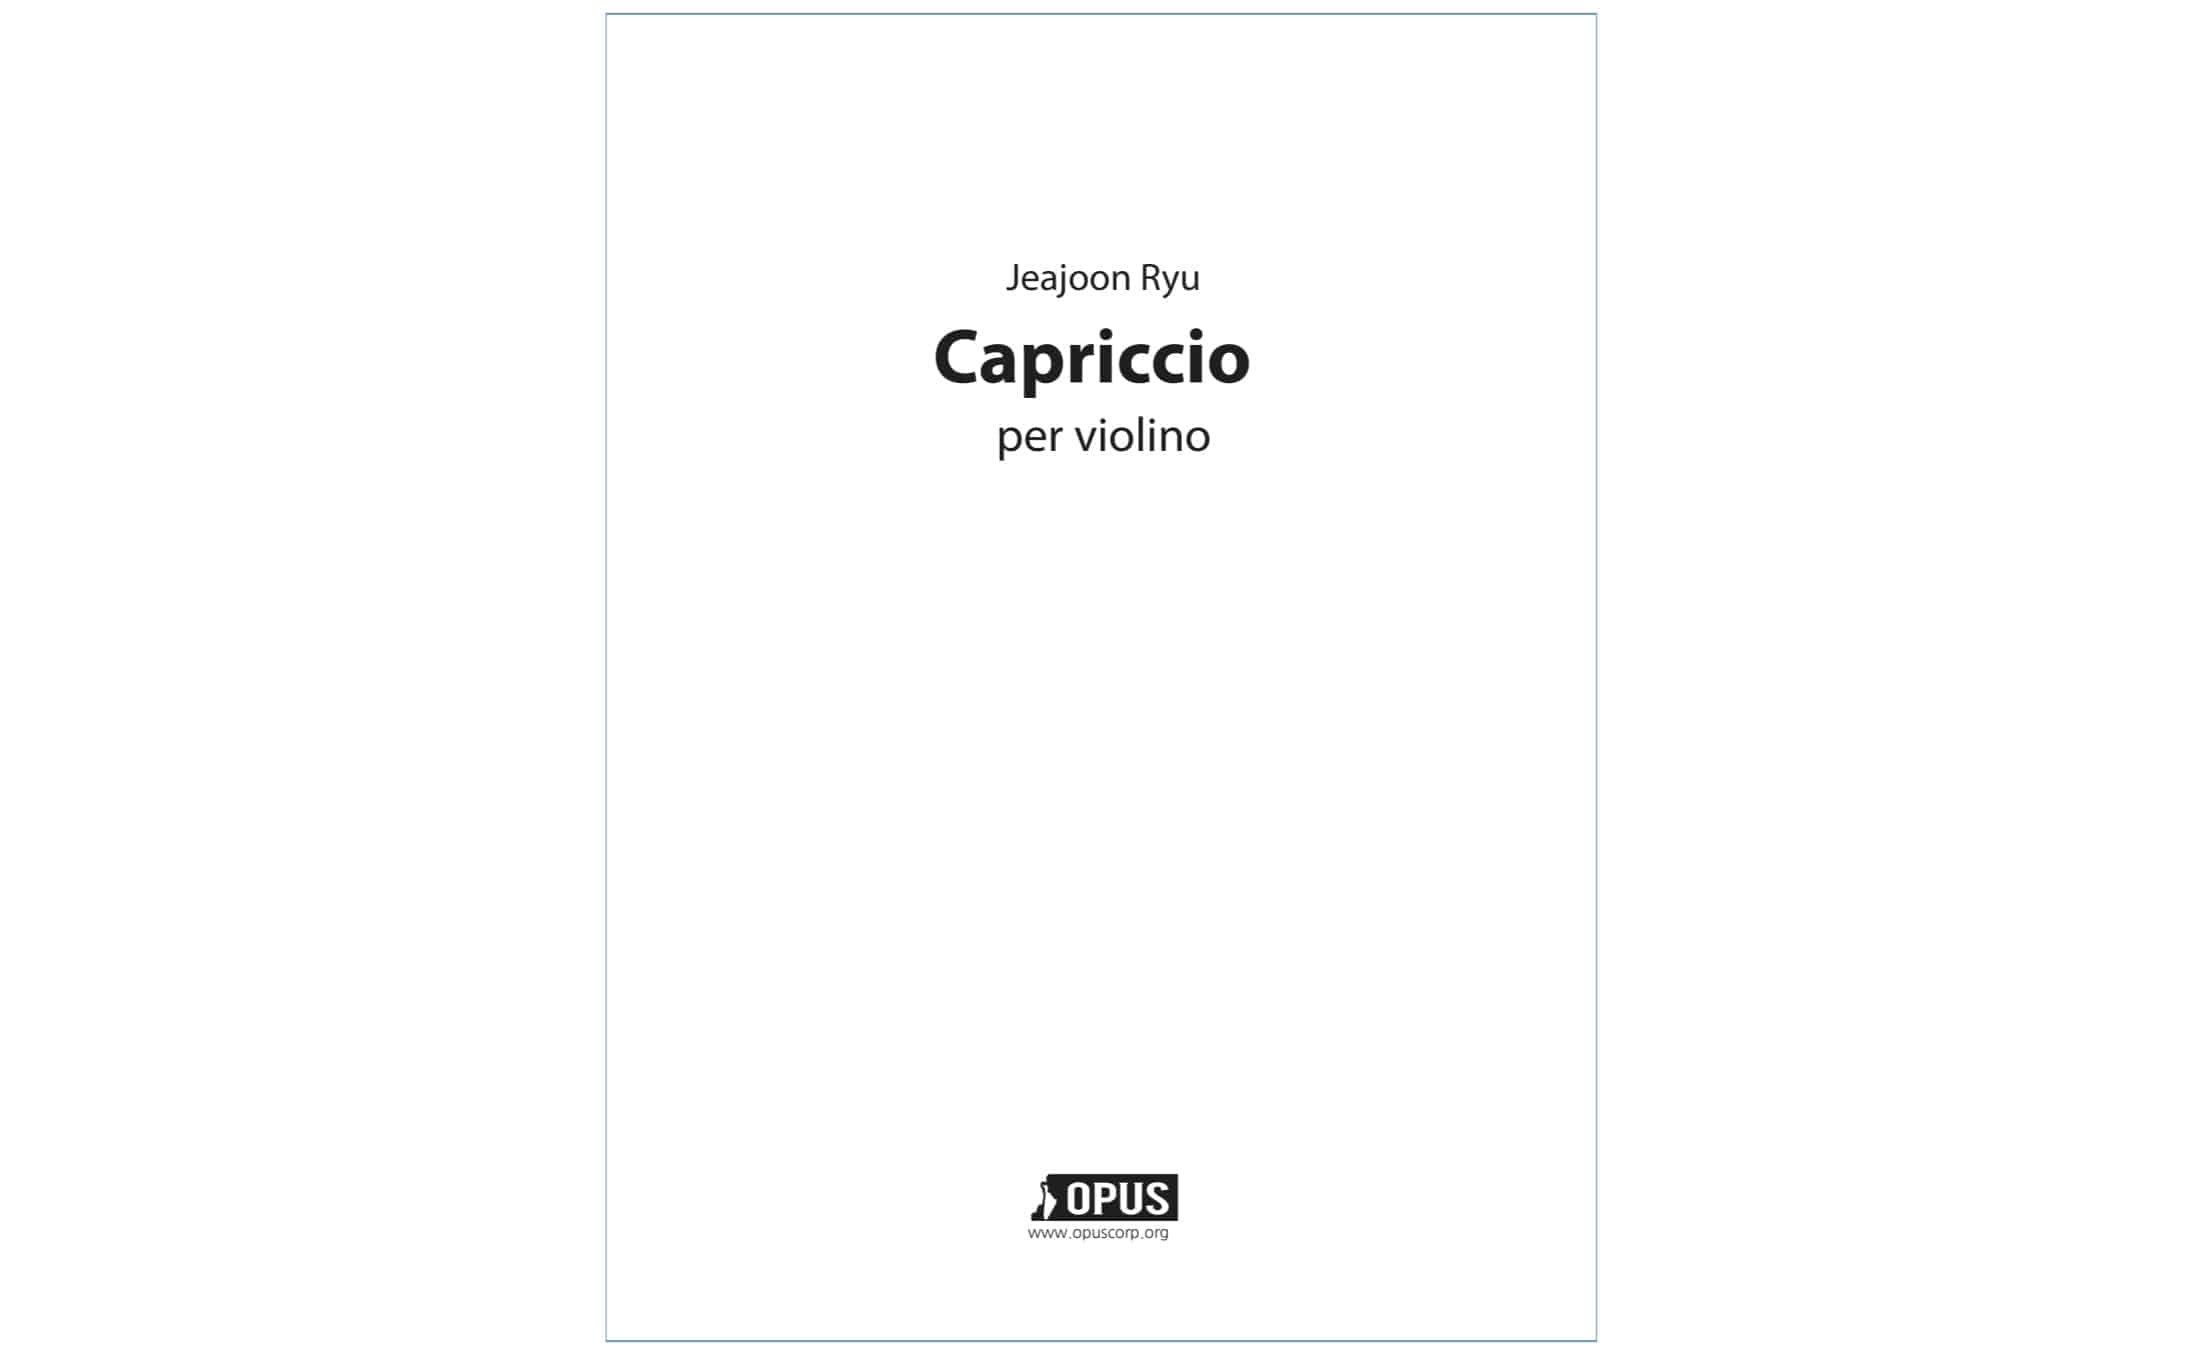 류재준: 바이올린을 위한 카프리치오 (무반주 바이올린 카프리치오)